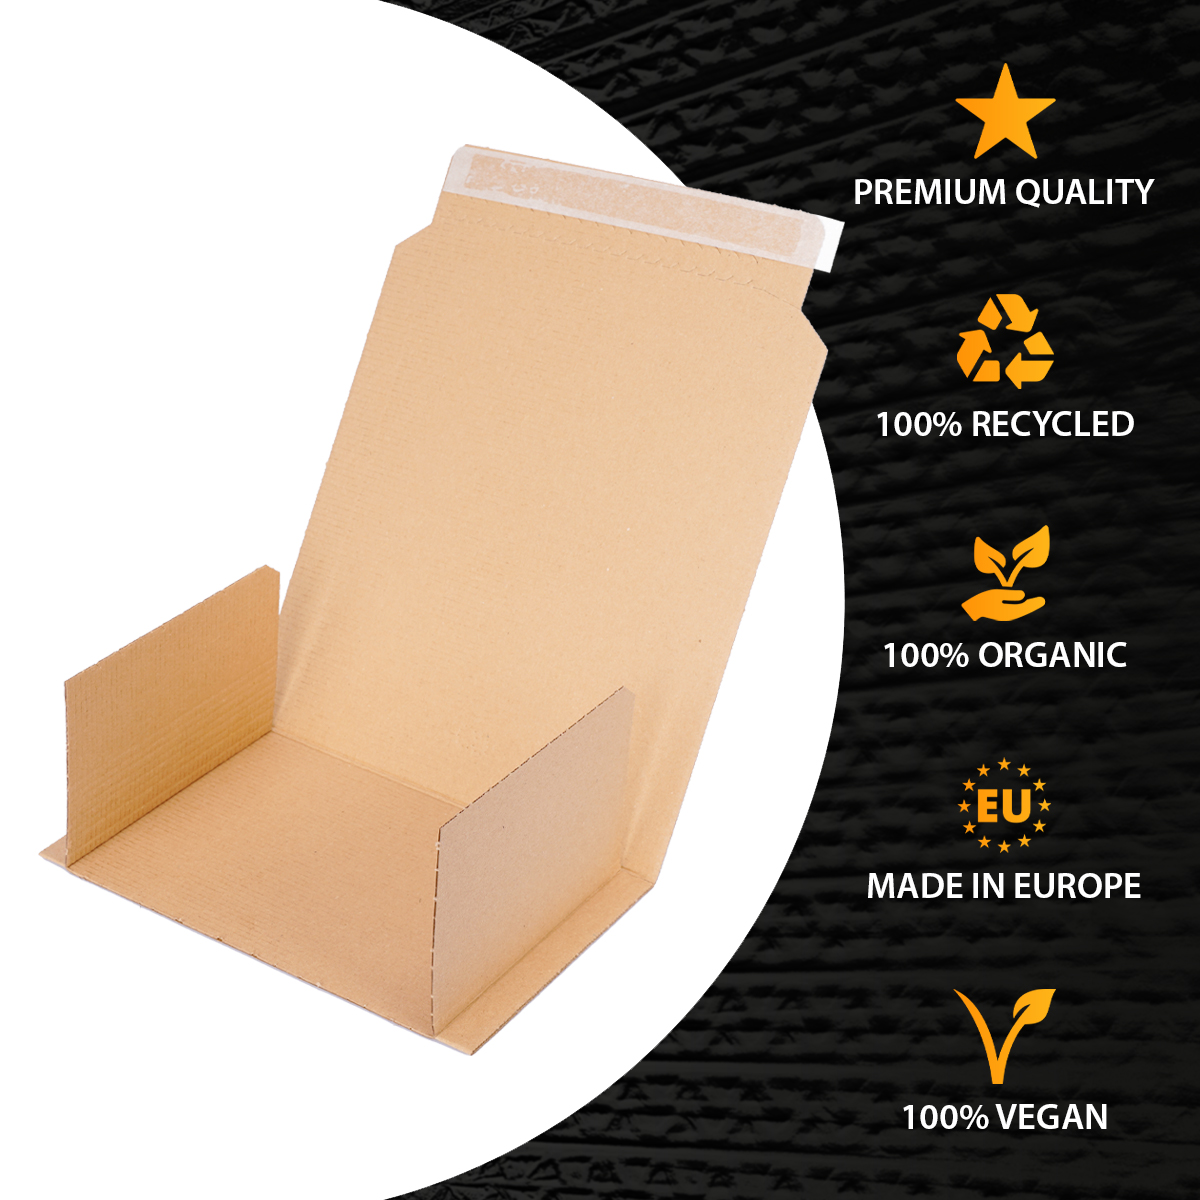 Buchverpackung 217x155x10-50 mm Wickelverpackung aus Pappe DIN A4 braun - BV 1